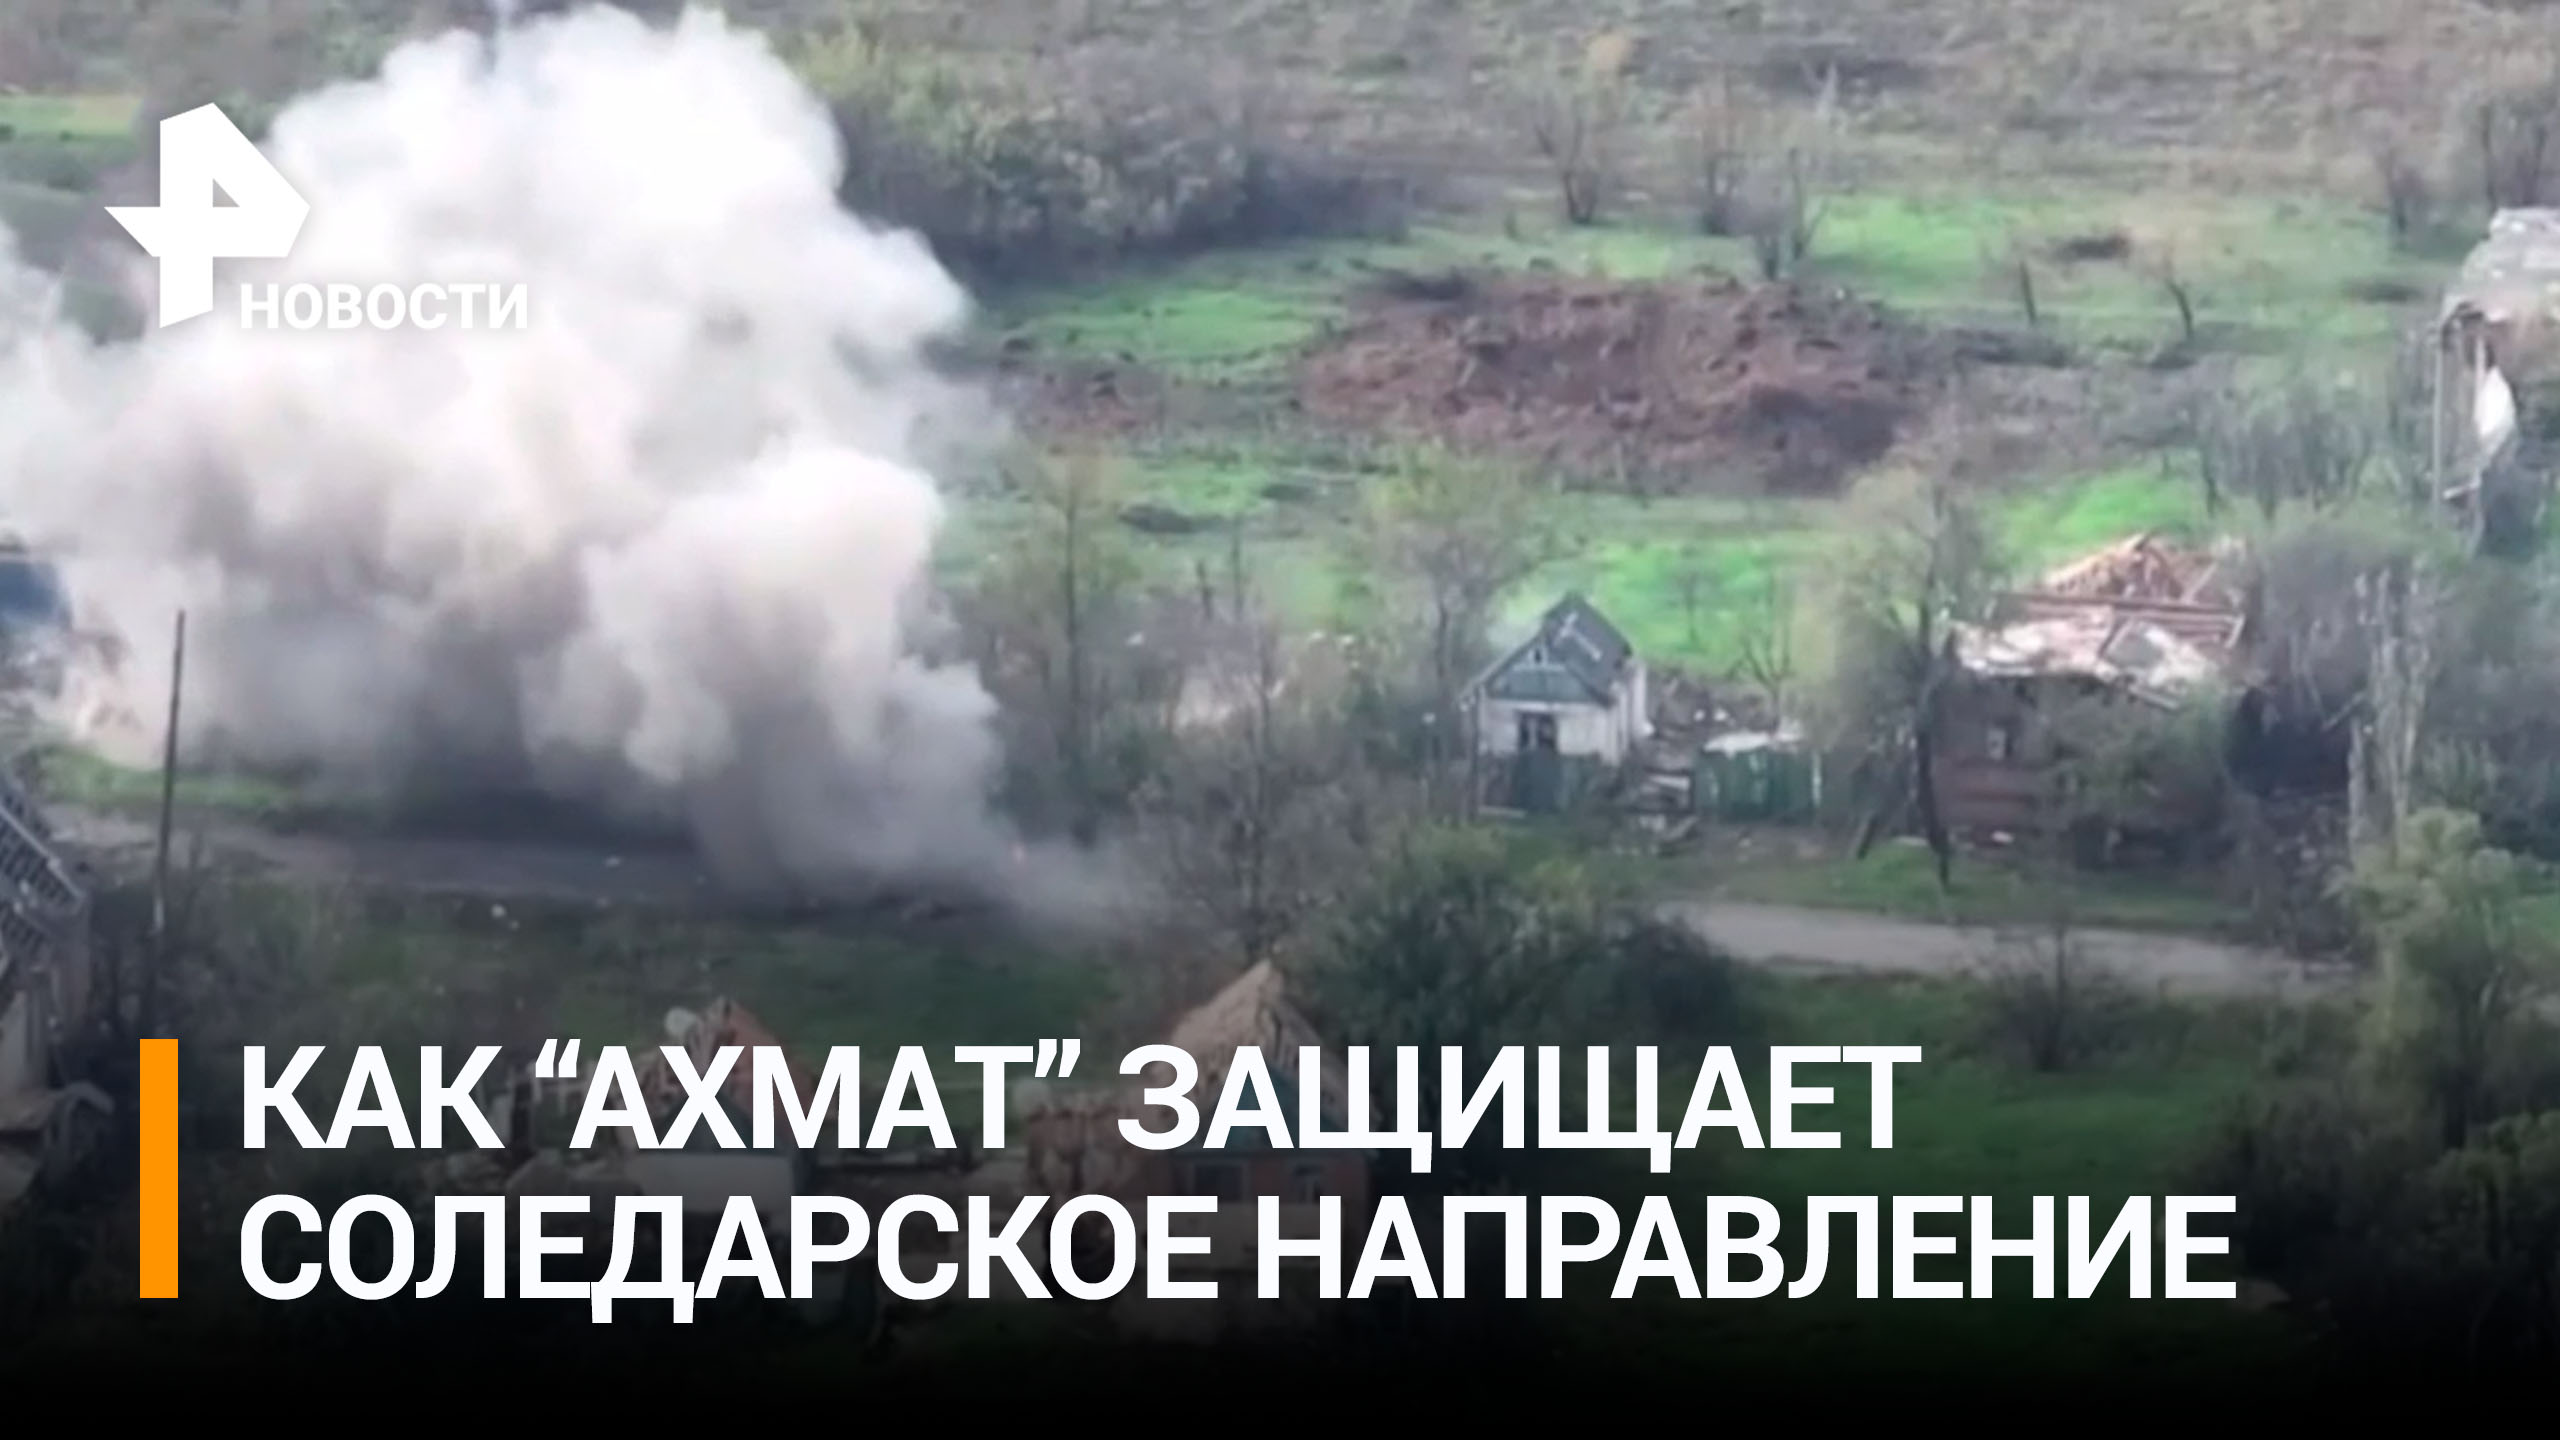 Кадыров показал кадры от бойцов "Ахмата": артиллерия добивает боевика в Соледаре / РЕН Новости